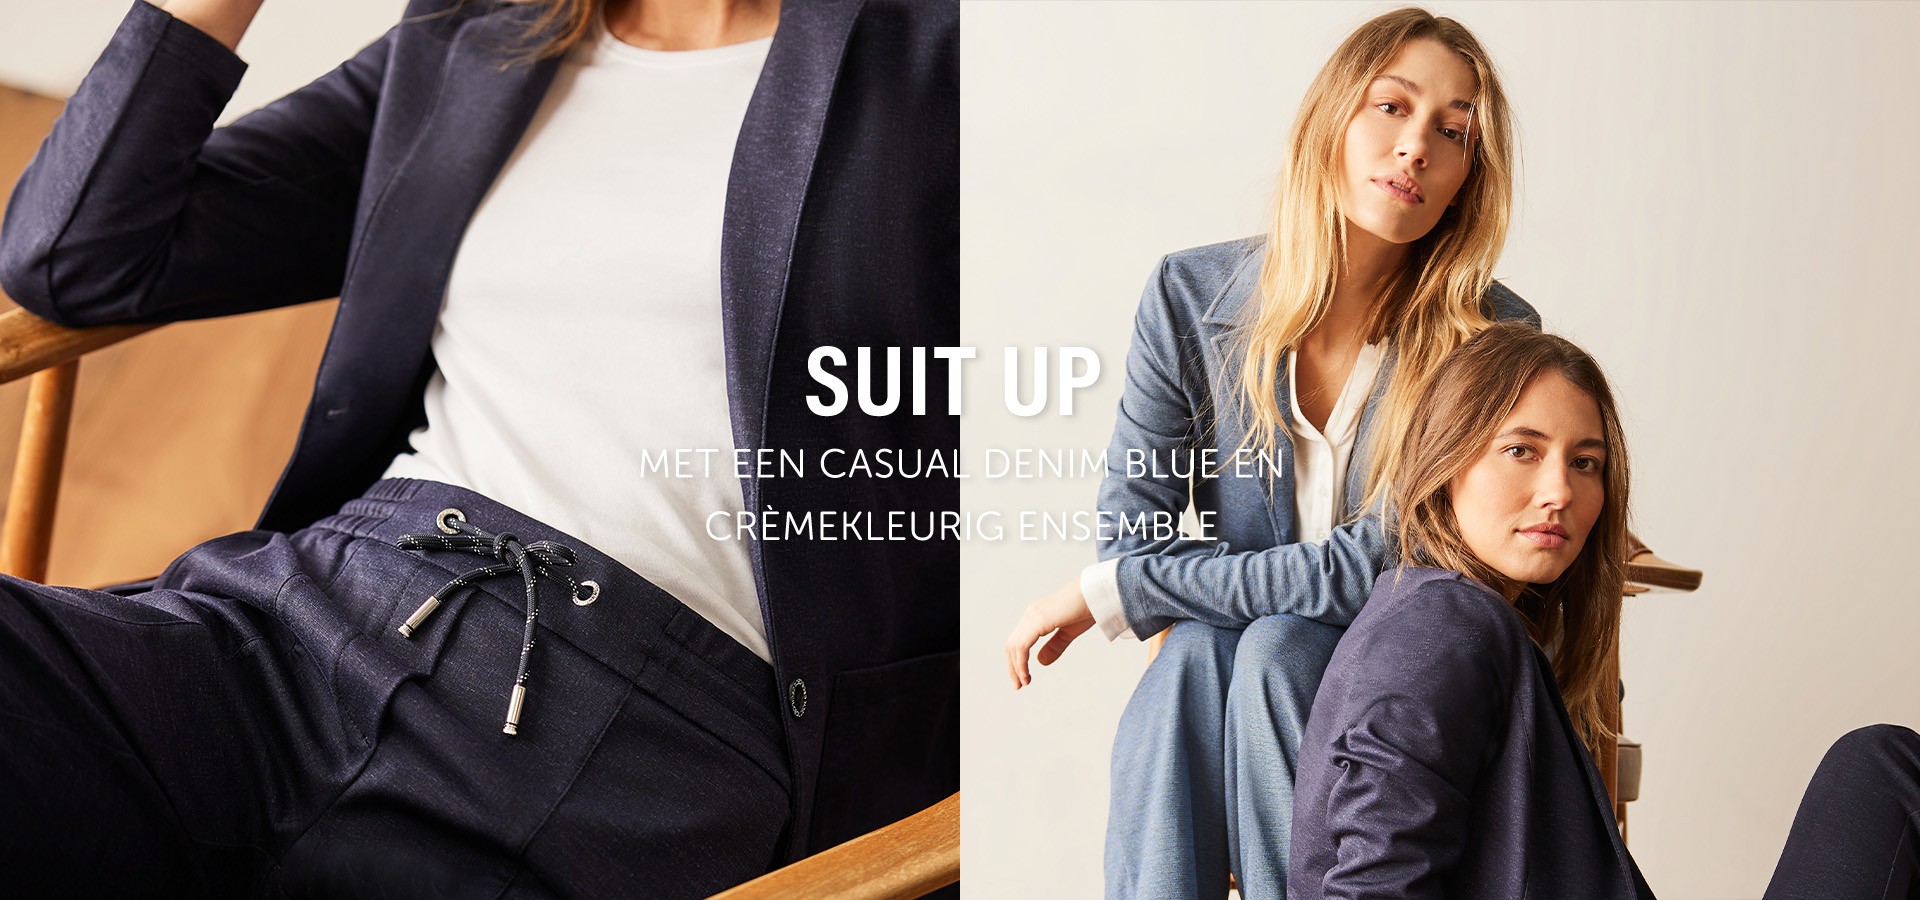 Suit upMet een Casual Denim Blue en crèmekleurig ensemble